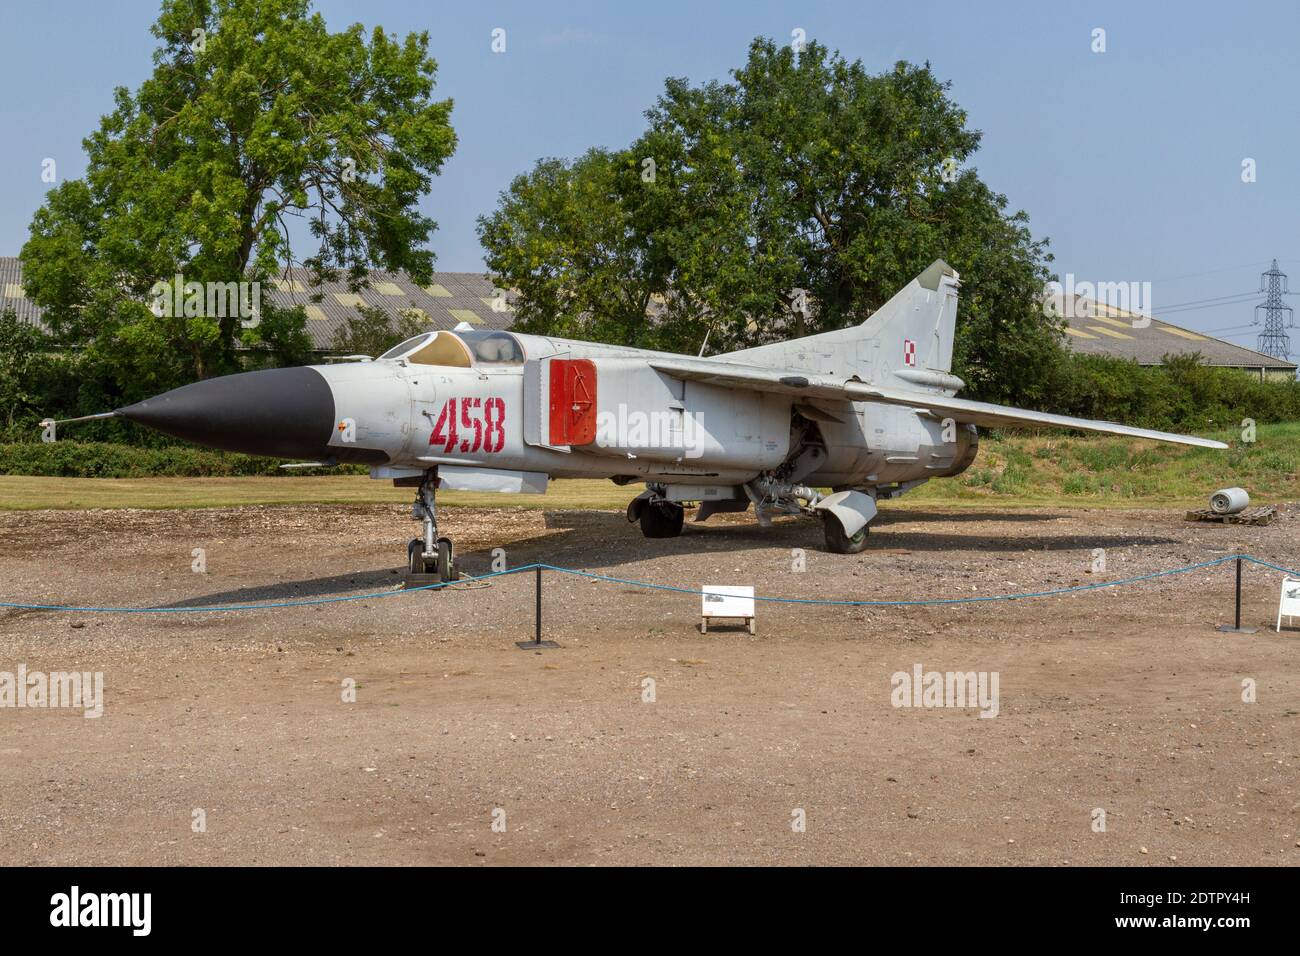 Eine sowjetische MiG-23 (Mikoyan-Gurevich) 'Flogger' 07 Luftkampfjäger, Newark Air Museum, in der Nähe von Newark-on-Trent, Nottinghamshire, Großbritannien. Stockfoto